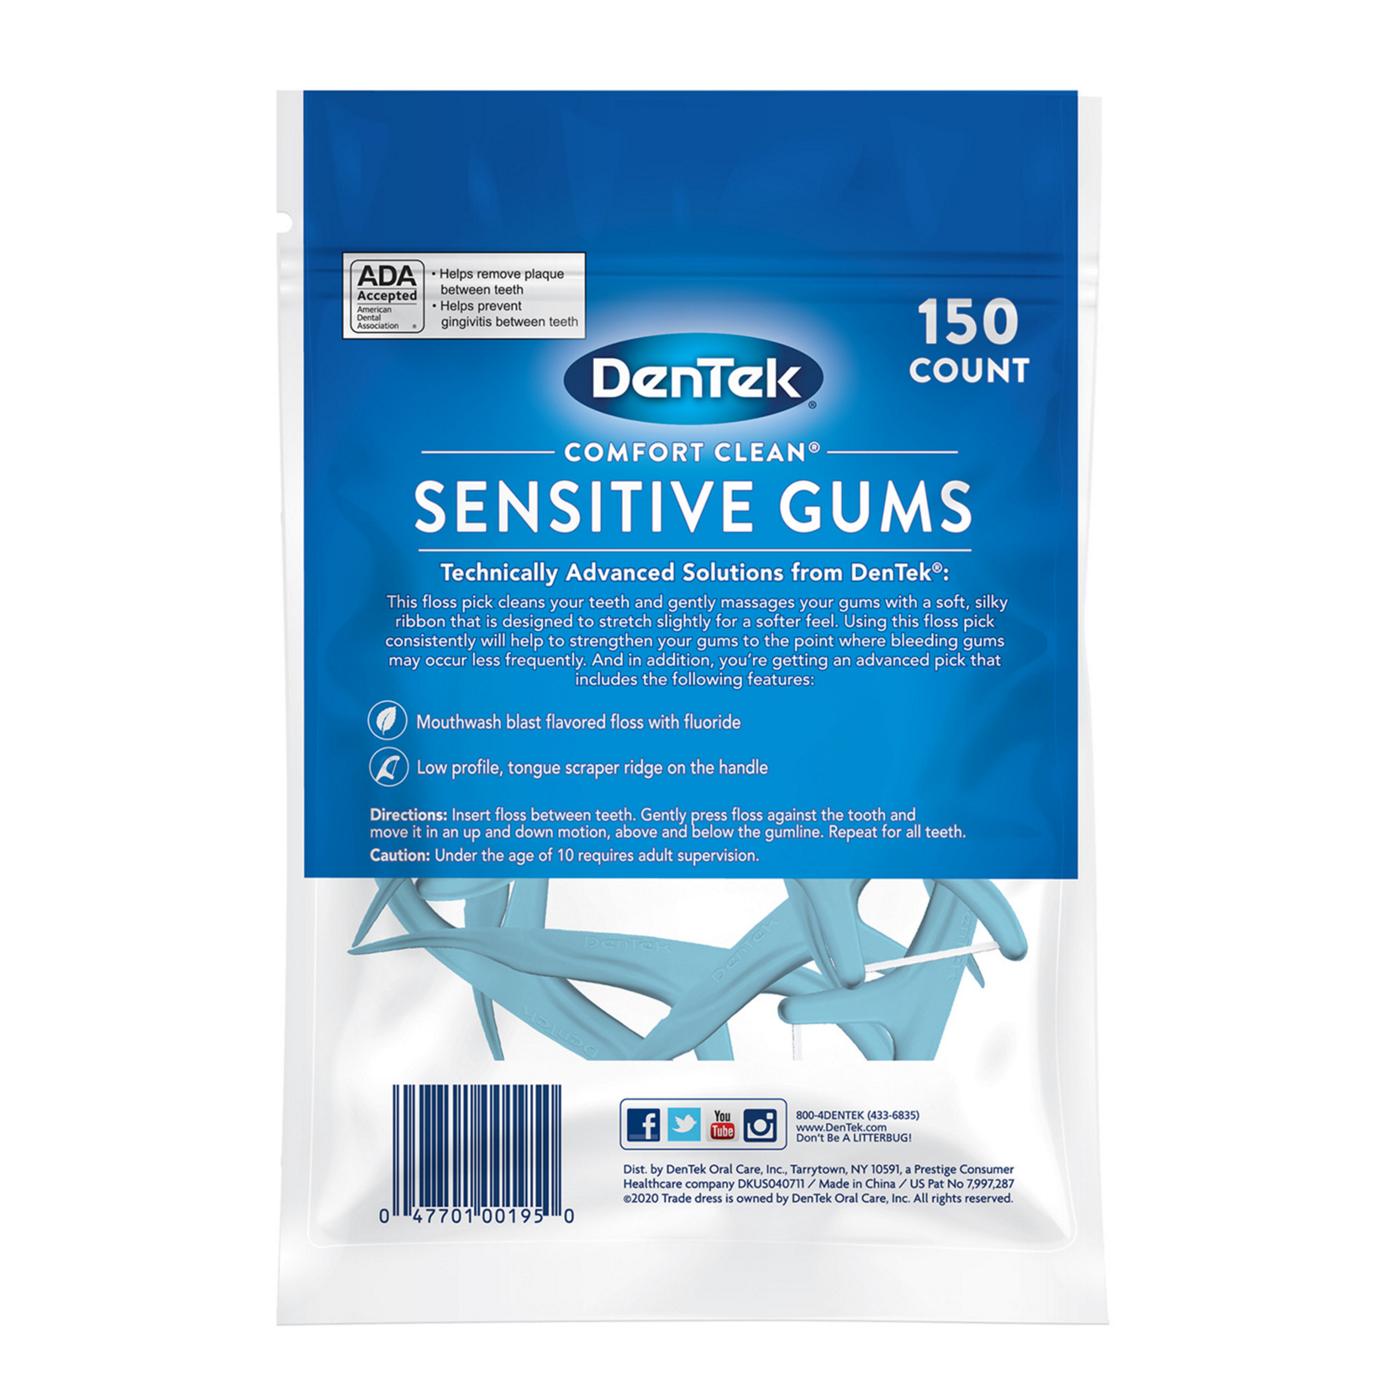 DenTek Comfort Clean Sensitive Gums Mouthwash Blast; image 2 of 5